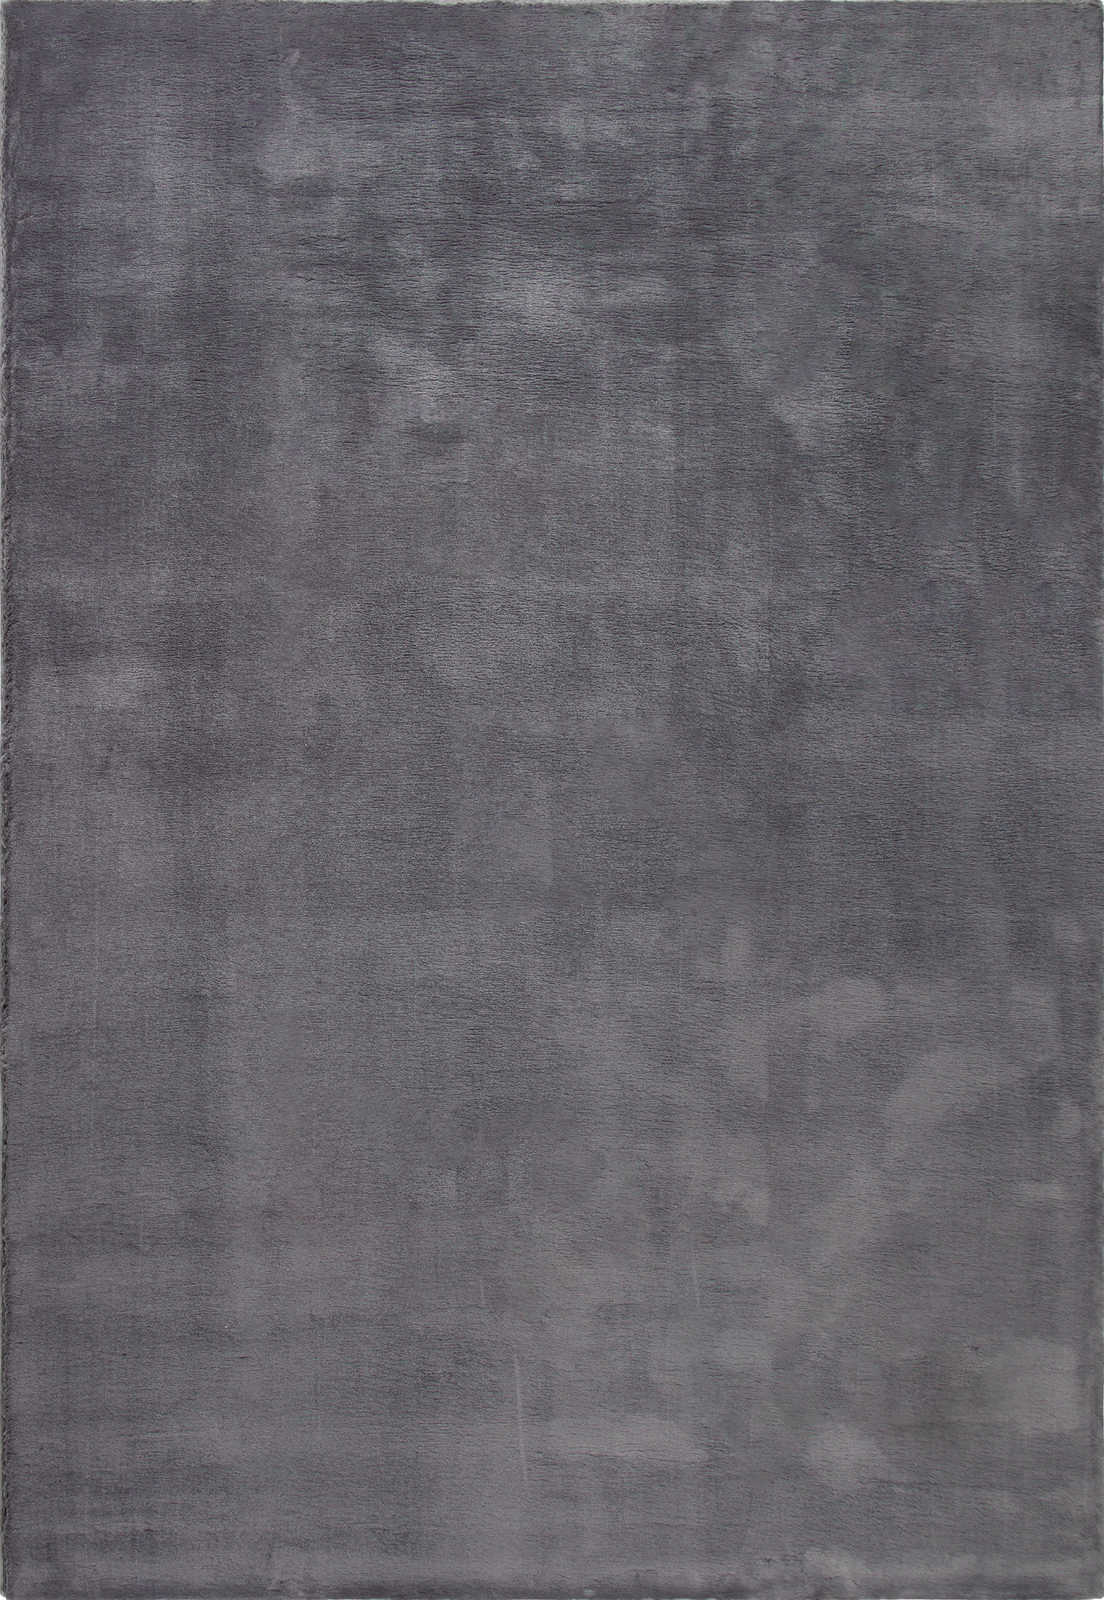             Moderner Hochflor Teppich in Anthrazit – 150 x 80 cm
        